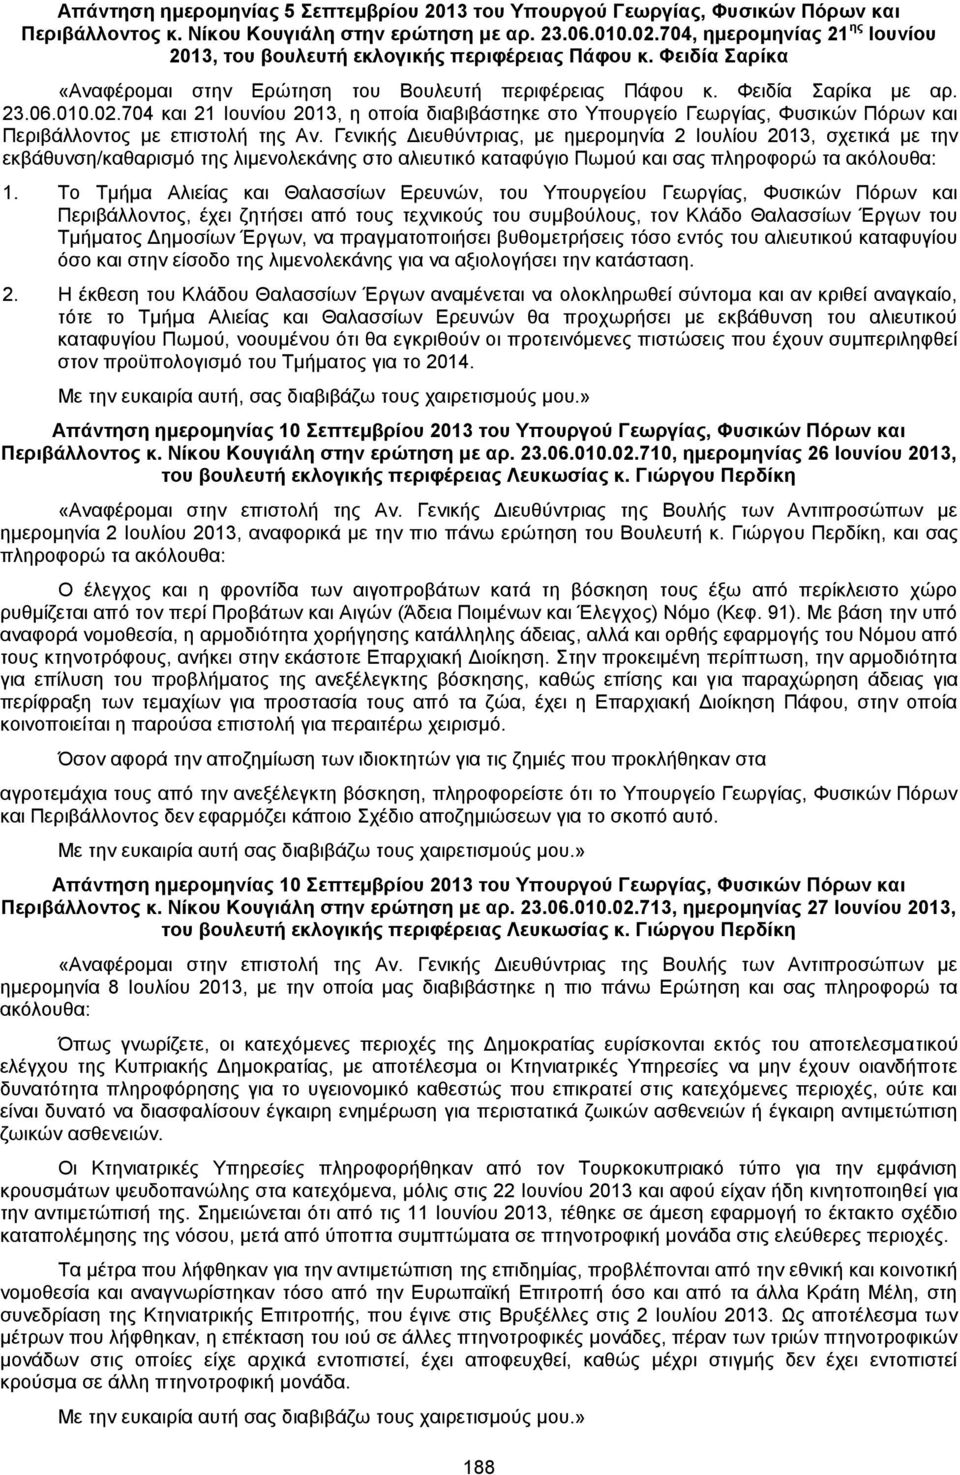 704 και 21 Ιουνίου 2013, η οποία διαβιβάστηκε στο Υπουργείο Γεωργίας, Φυσικών Πόρων και Περιβάλλοντος με επιστολή της Αν.